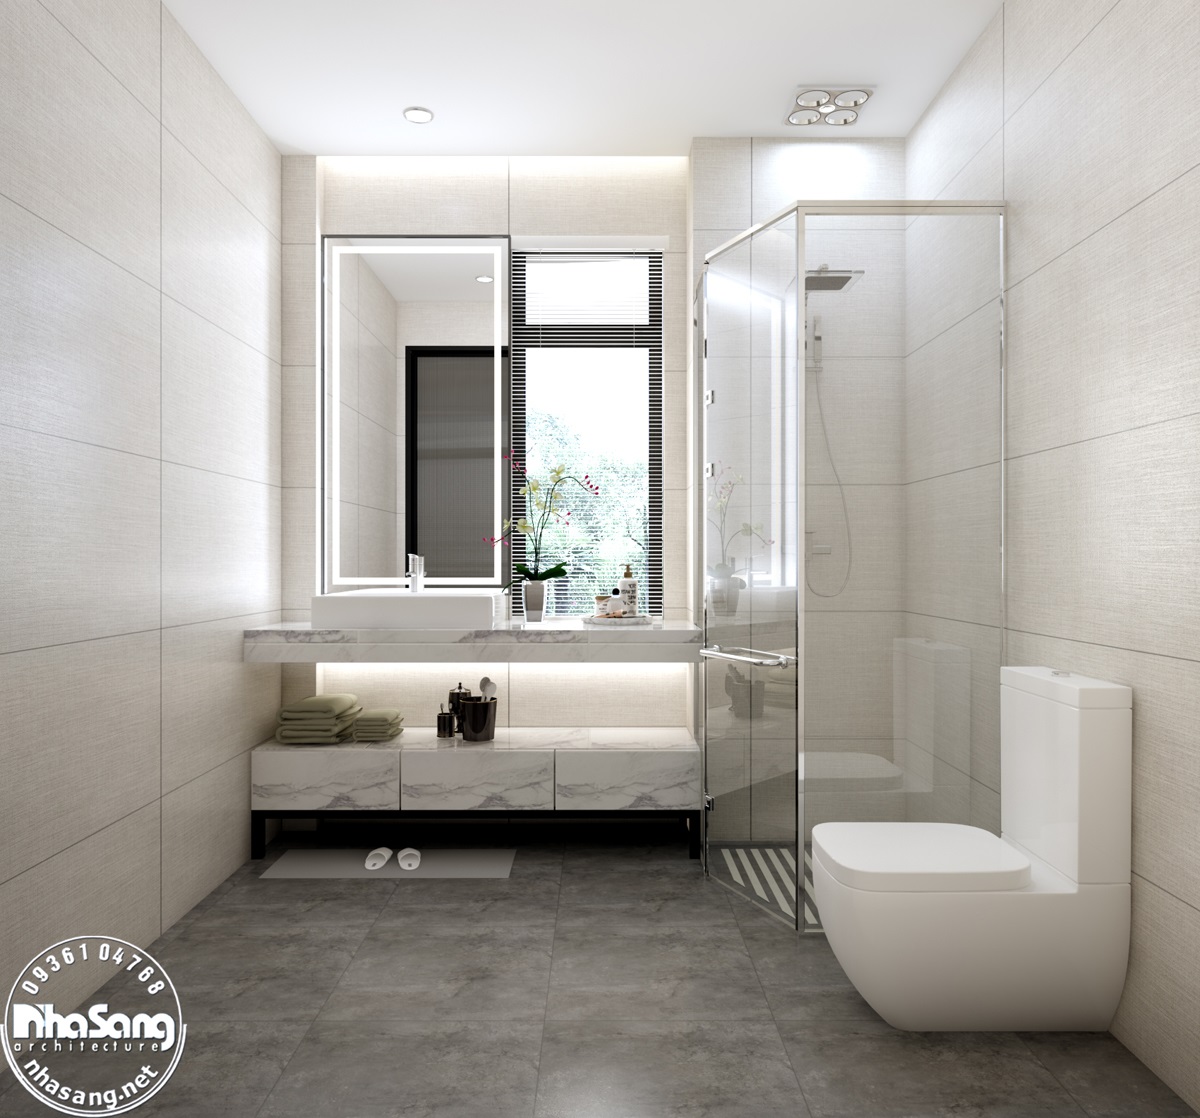 41 Mẫu nhà vệ sinh hiện đại bậc nhất 2023  Phòng tắm nhỏ đẹp  Cleanipedia